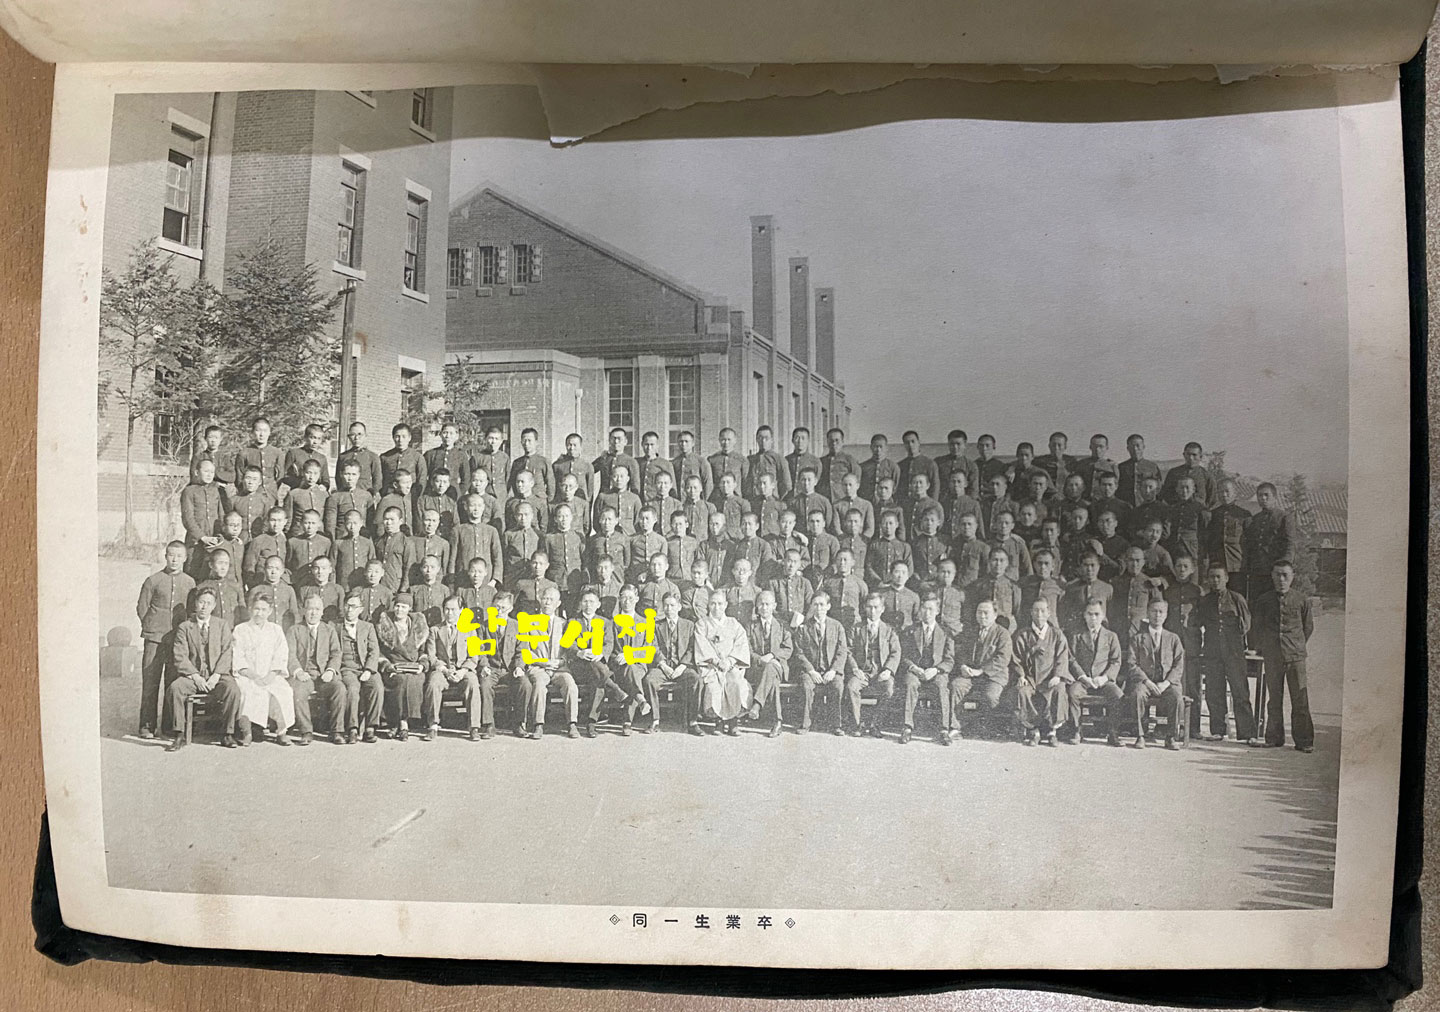 휘문고등보통학교 1934년 제12회 졸업앨범 - 정지용. 이병기 등 보임